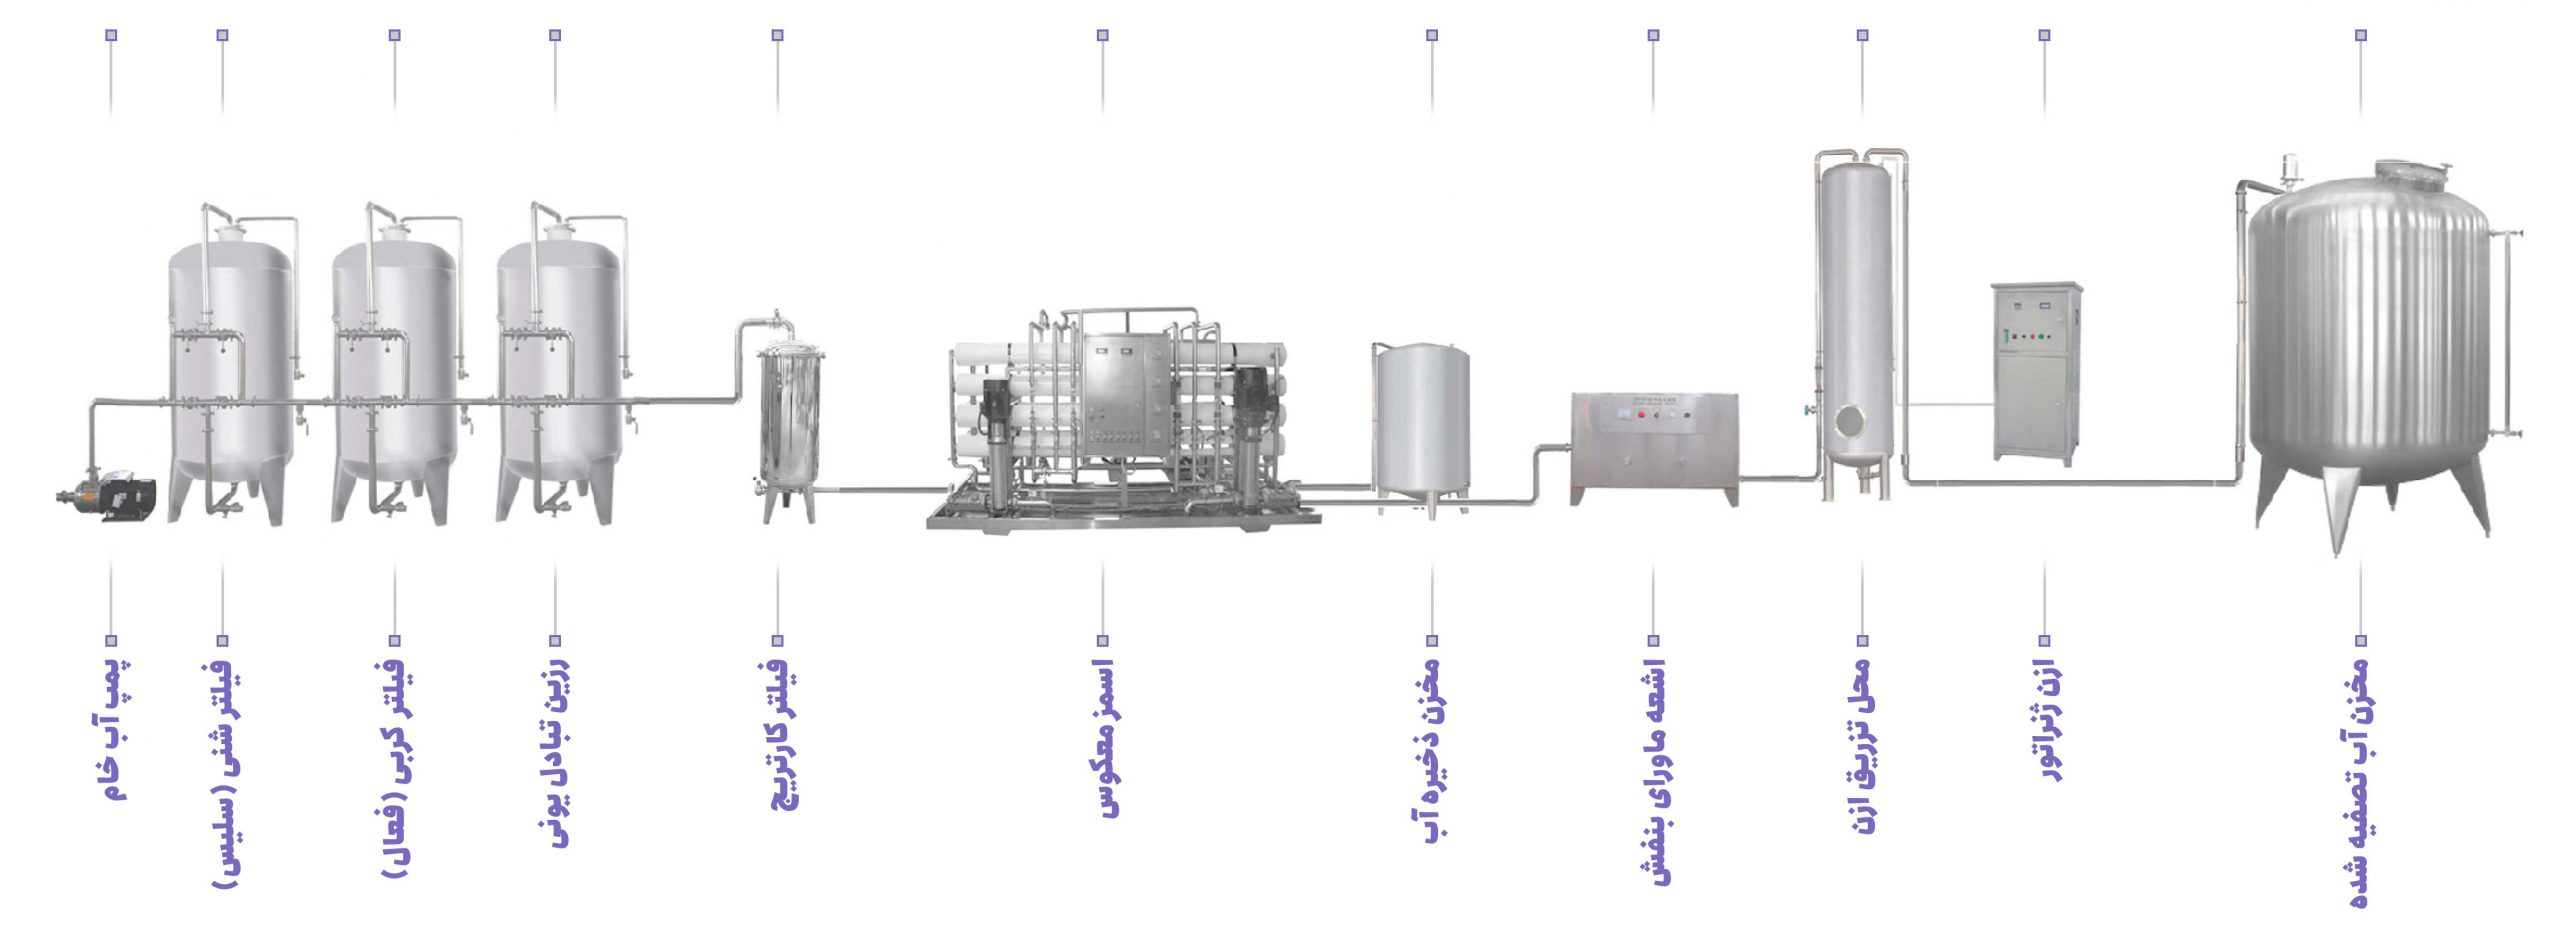 پروسه تصفیه آب همراه با دستگاه ازن در ضدعفونی تصفغیه آب و تصفیه فاضلاب صنعتی